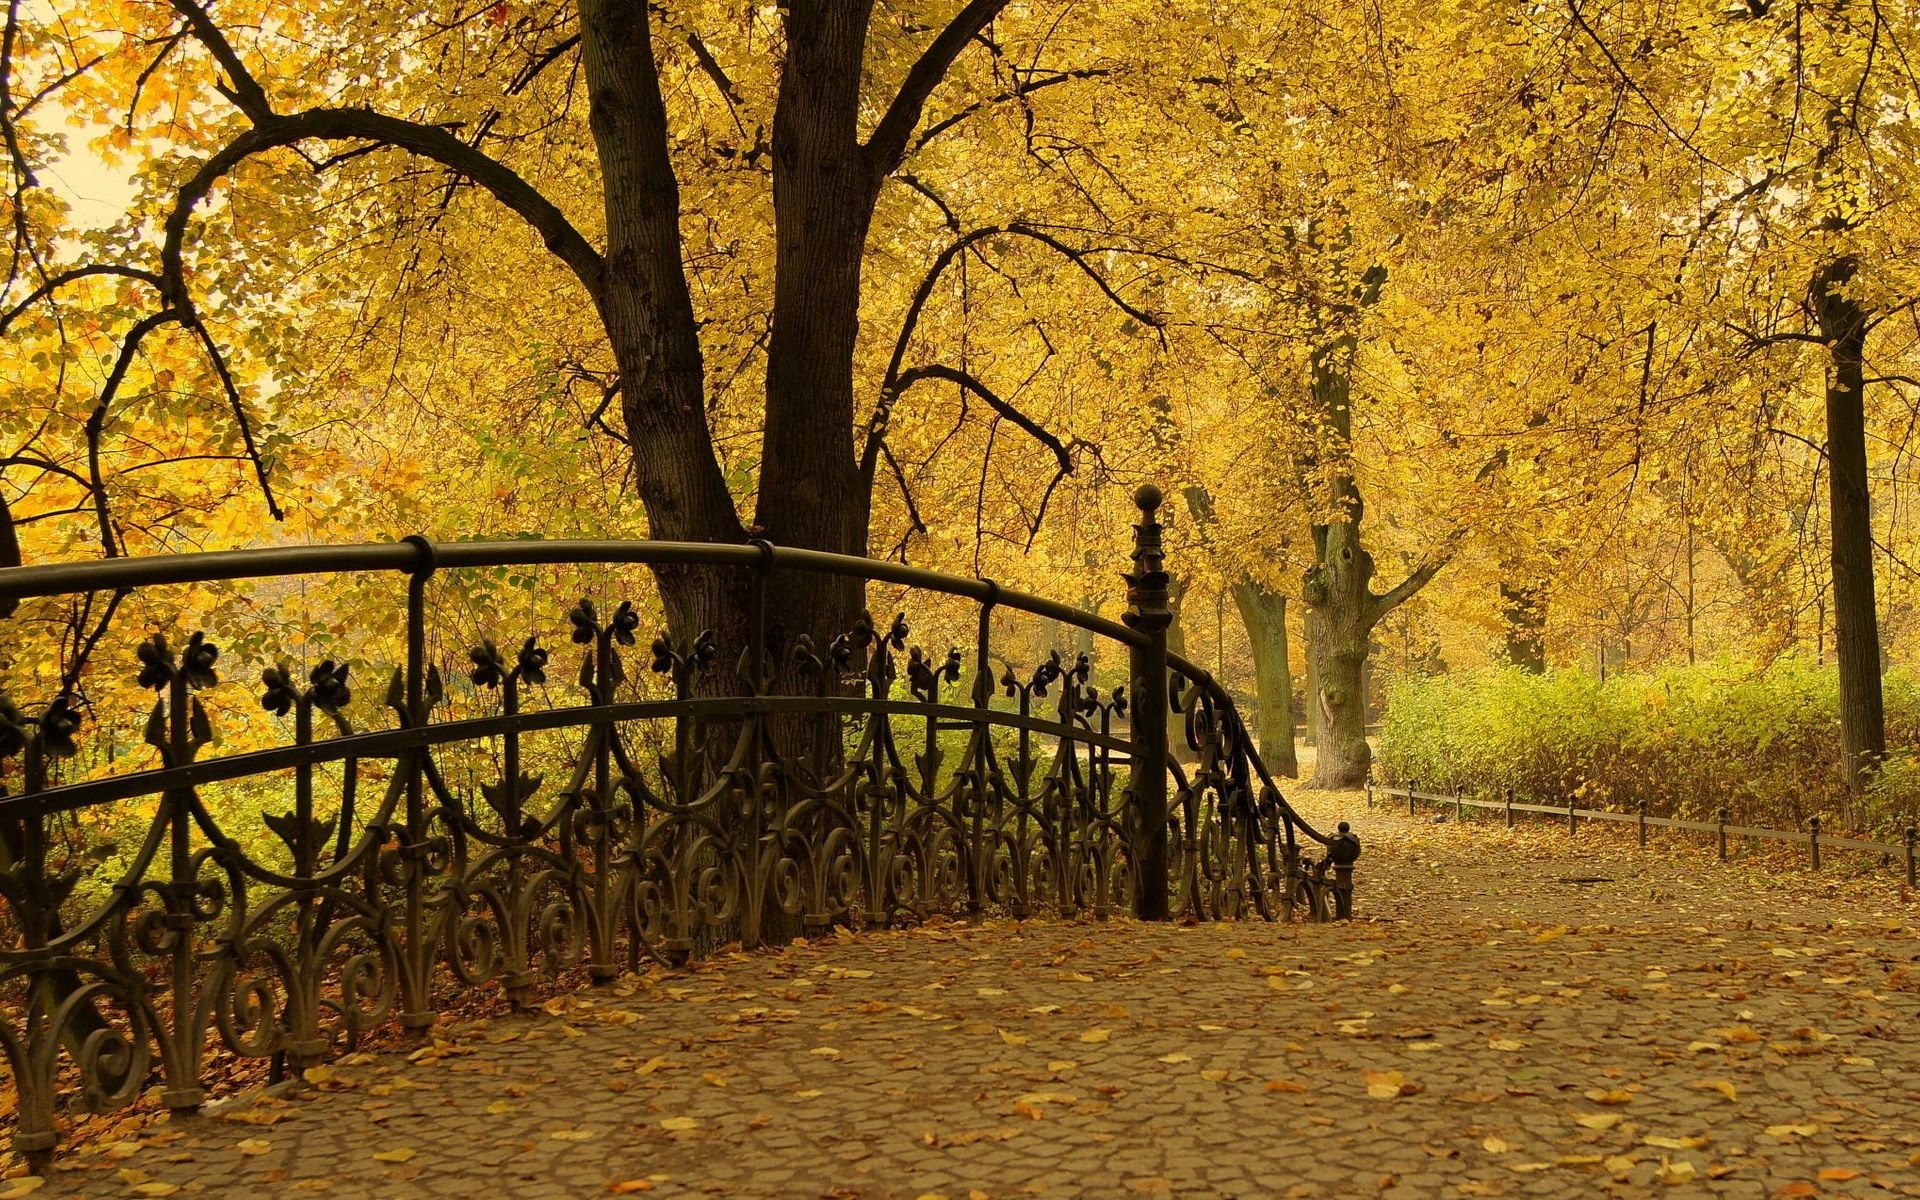 park, nature, trees, autumn, leaves, bridge, railings, handrail